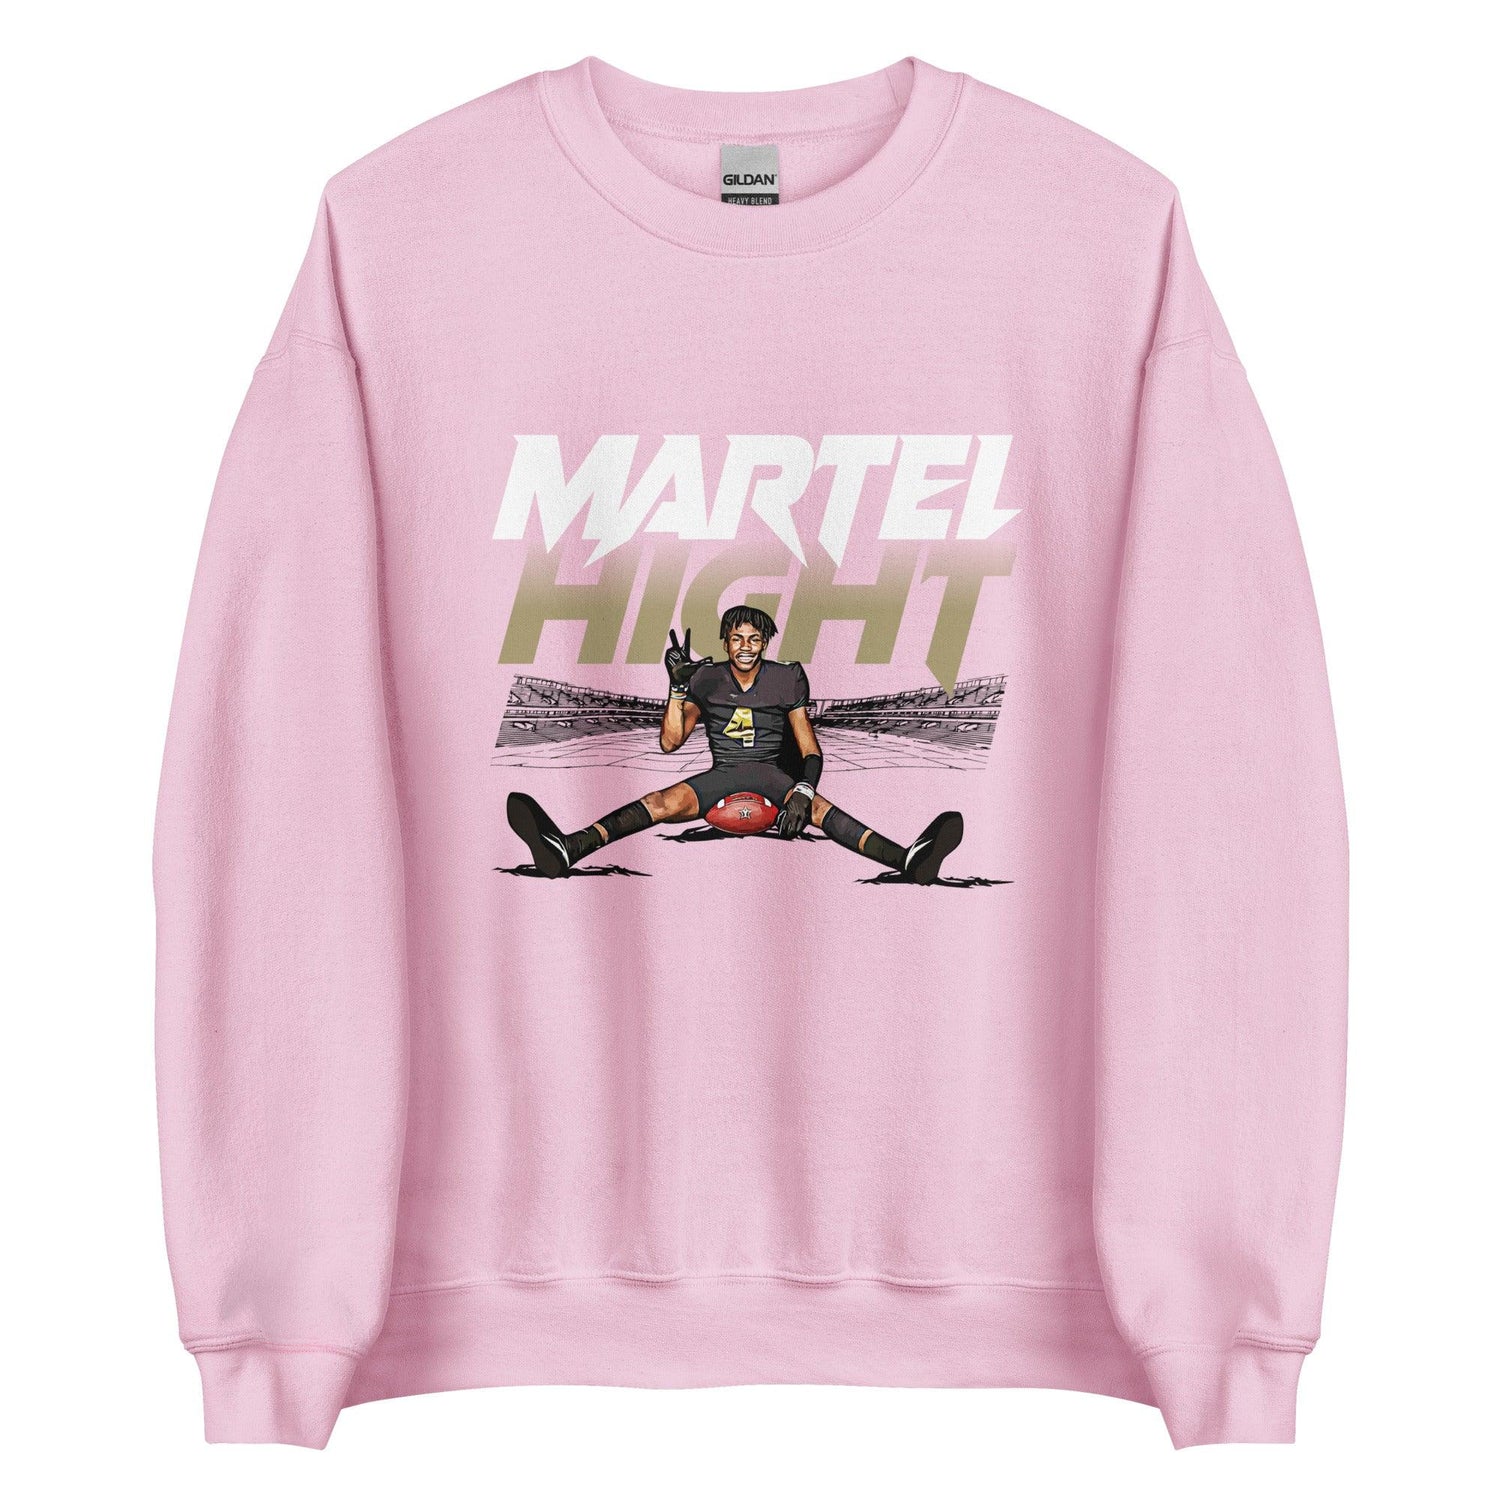 Martel Hight "Gameday" Sweatshirt - Fan Arch